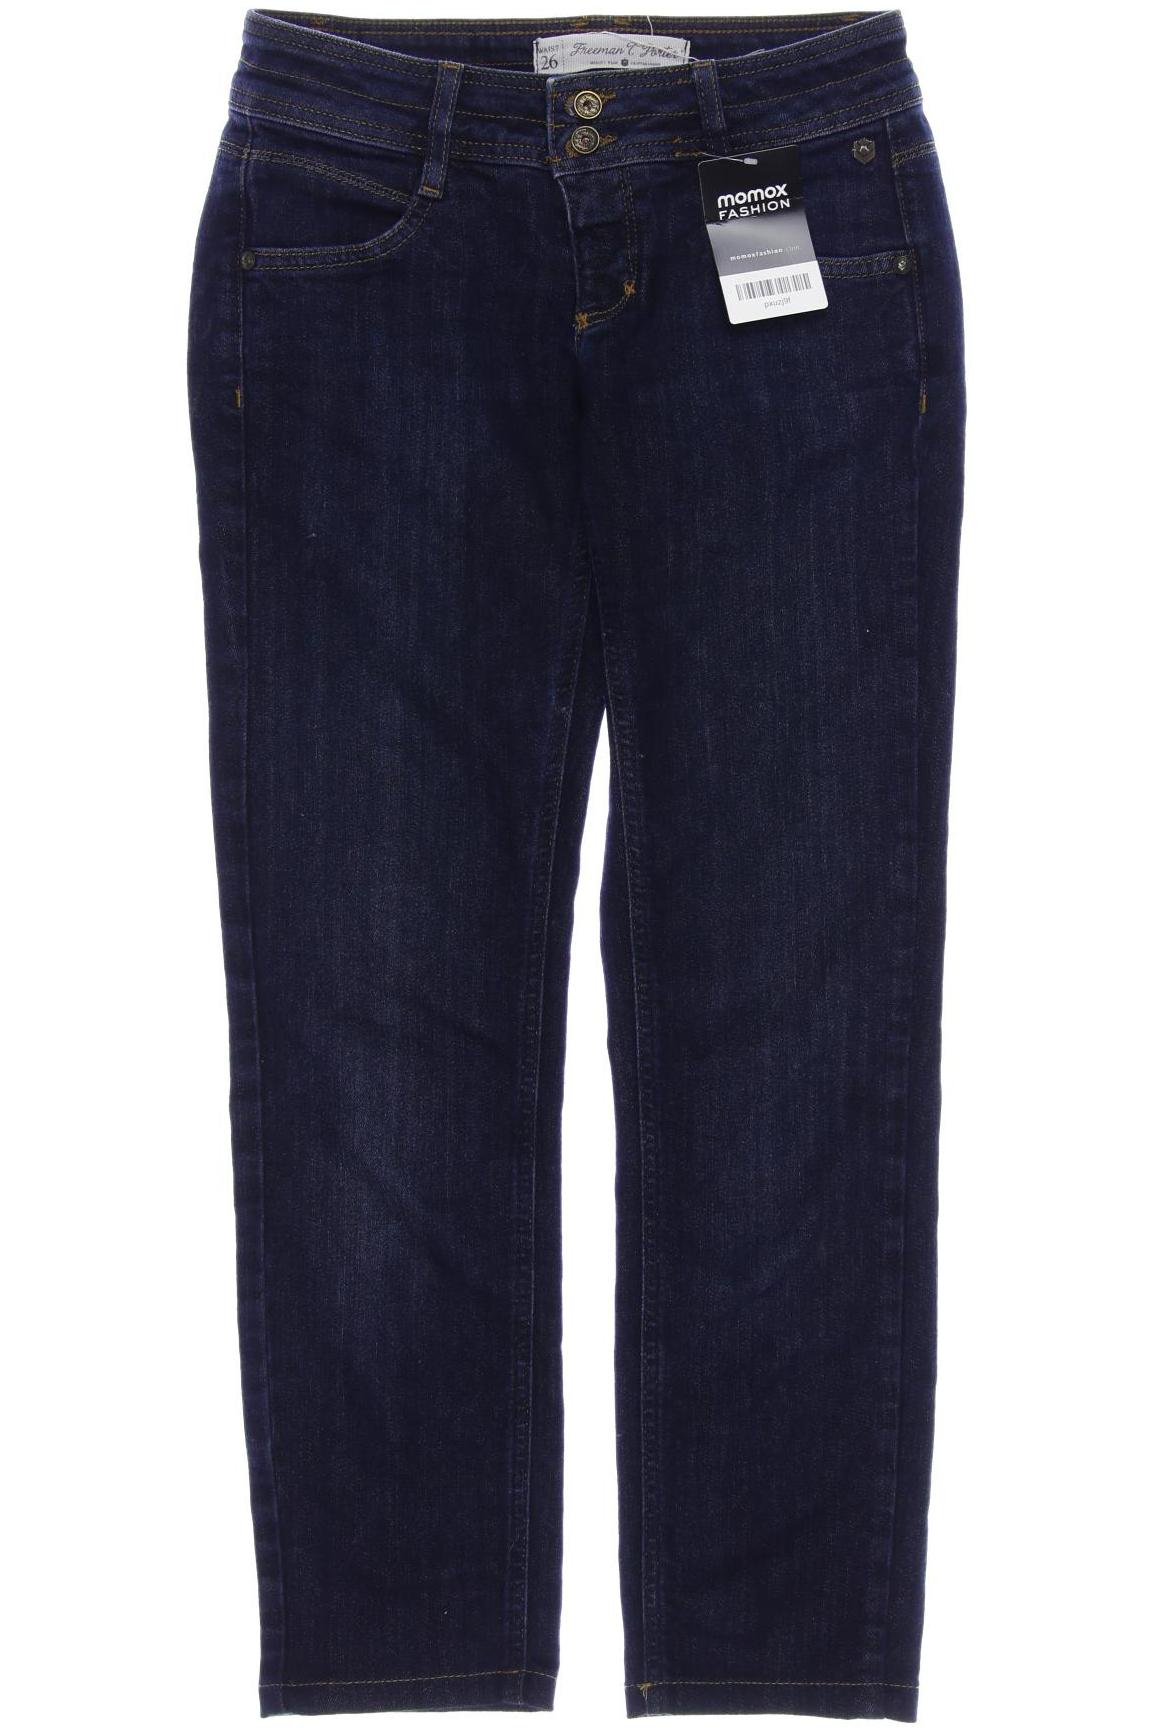 Freeman T. Porter Damen Jeans, marineblau von Freeman T. Porter